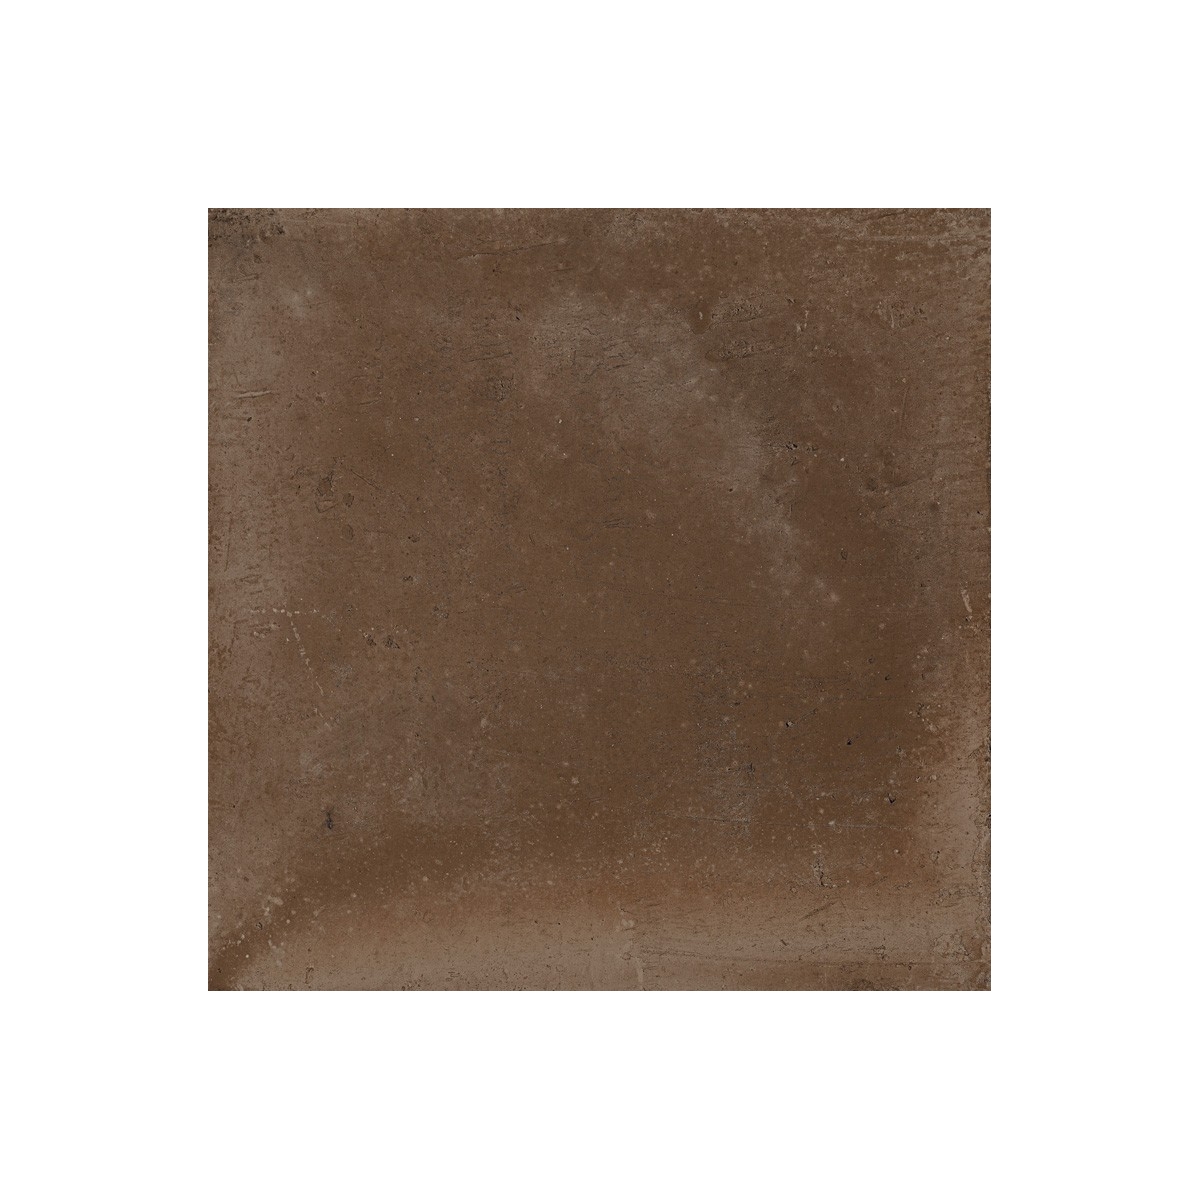 Pavimentos imitación hidráulico Gaya Fores - Rustic Moka 33,15x33,15 cm (caja 1.32 m2)